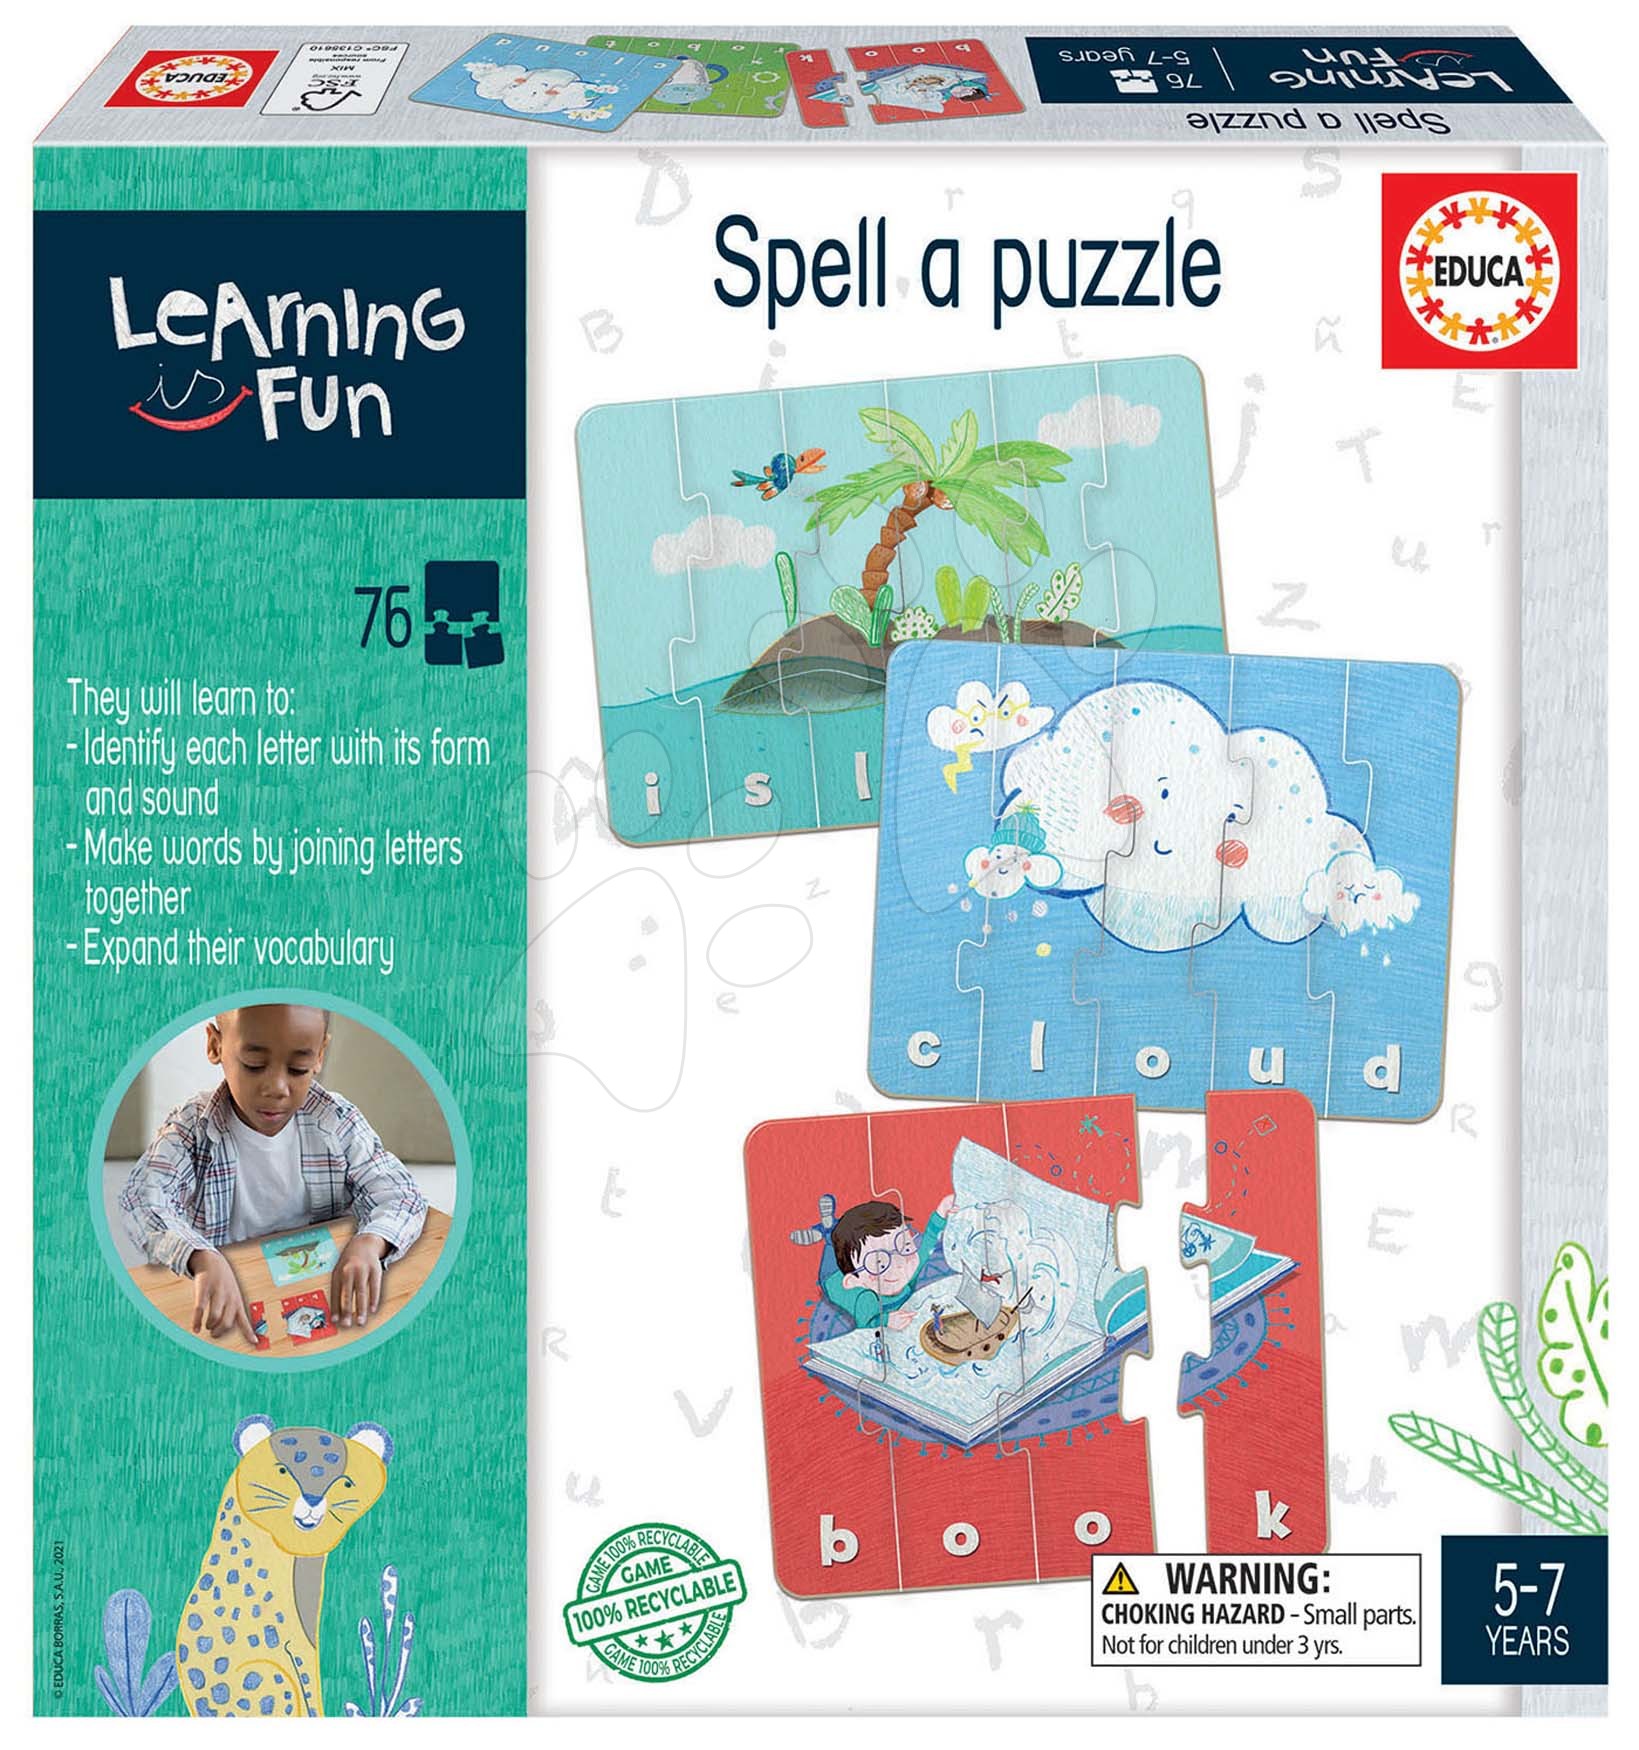 Oktatójáték legkisebbeknek Spell a Puzzle Educa Tanuljunk angolul képekkel 76 darabos 5 évtől